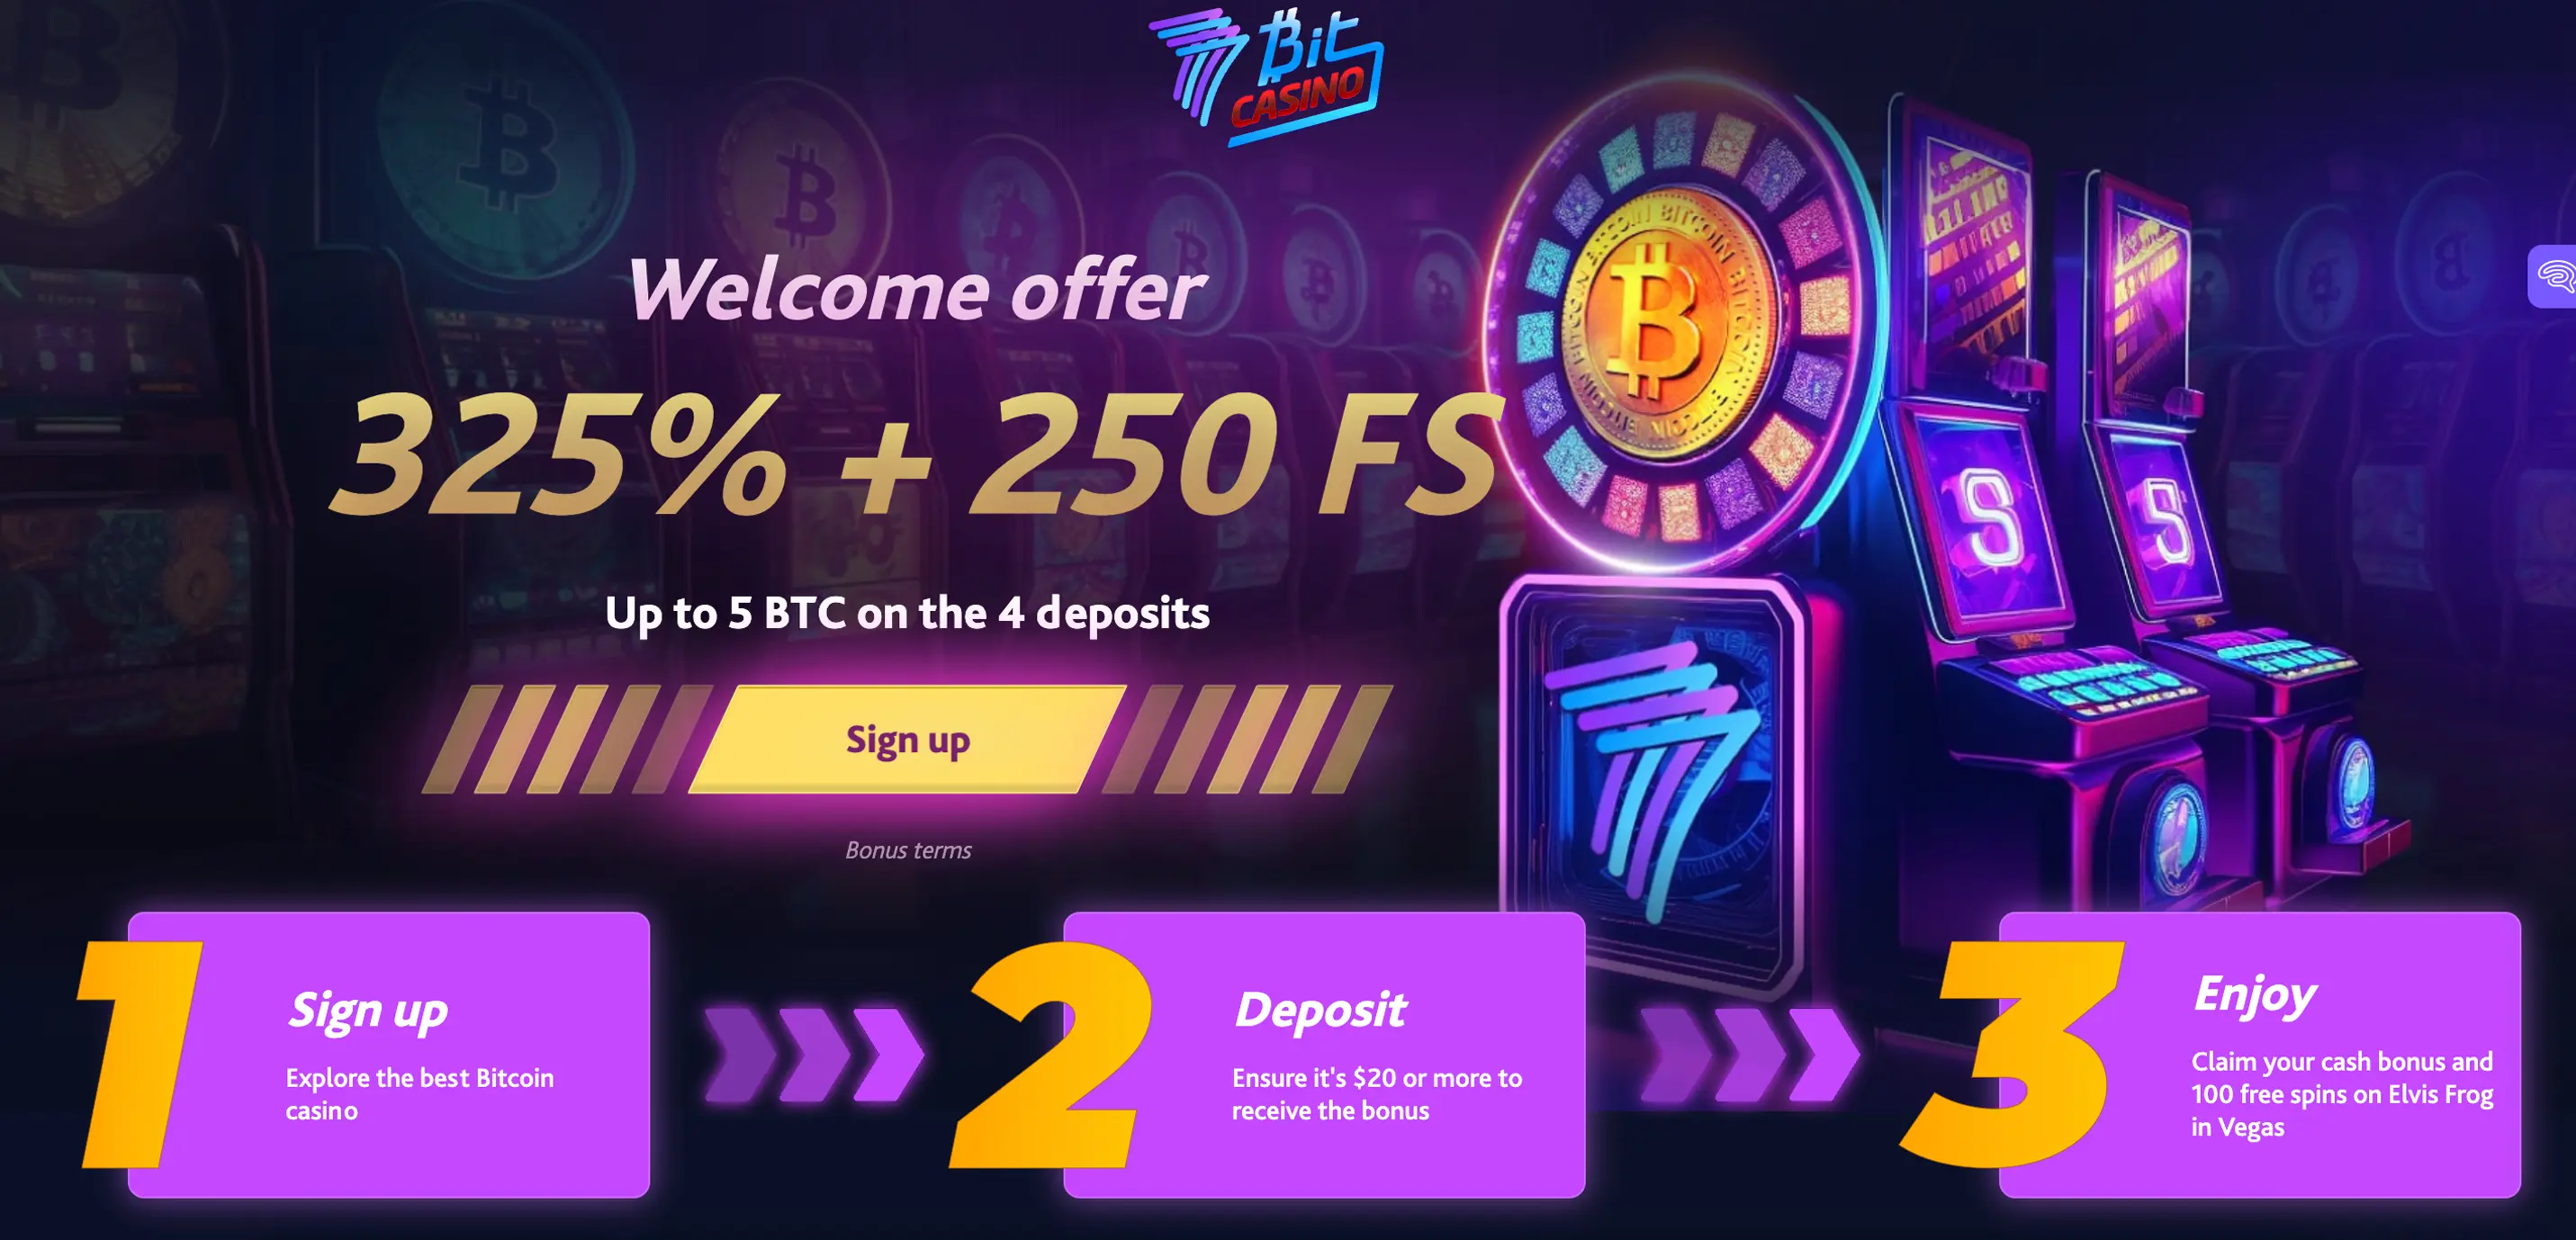 7bit Online Casino Bonus